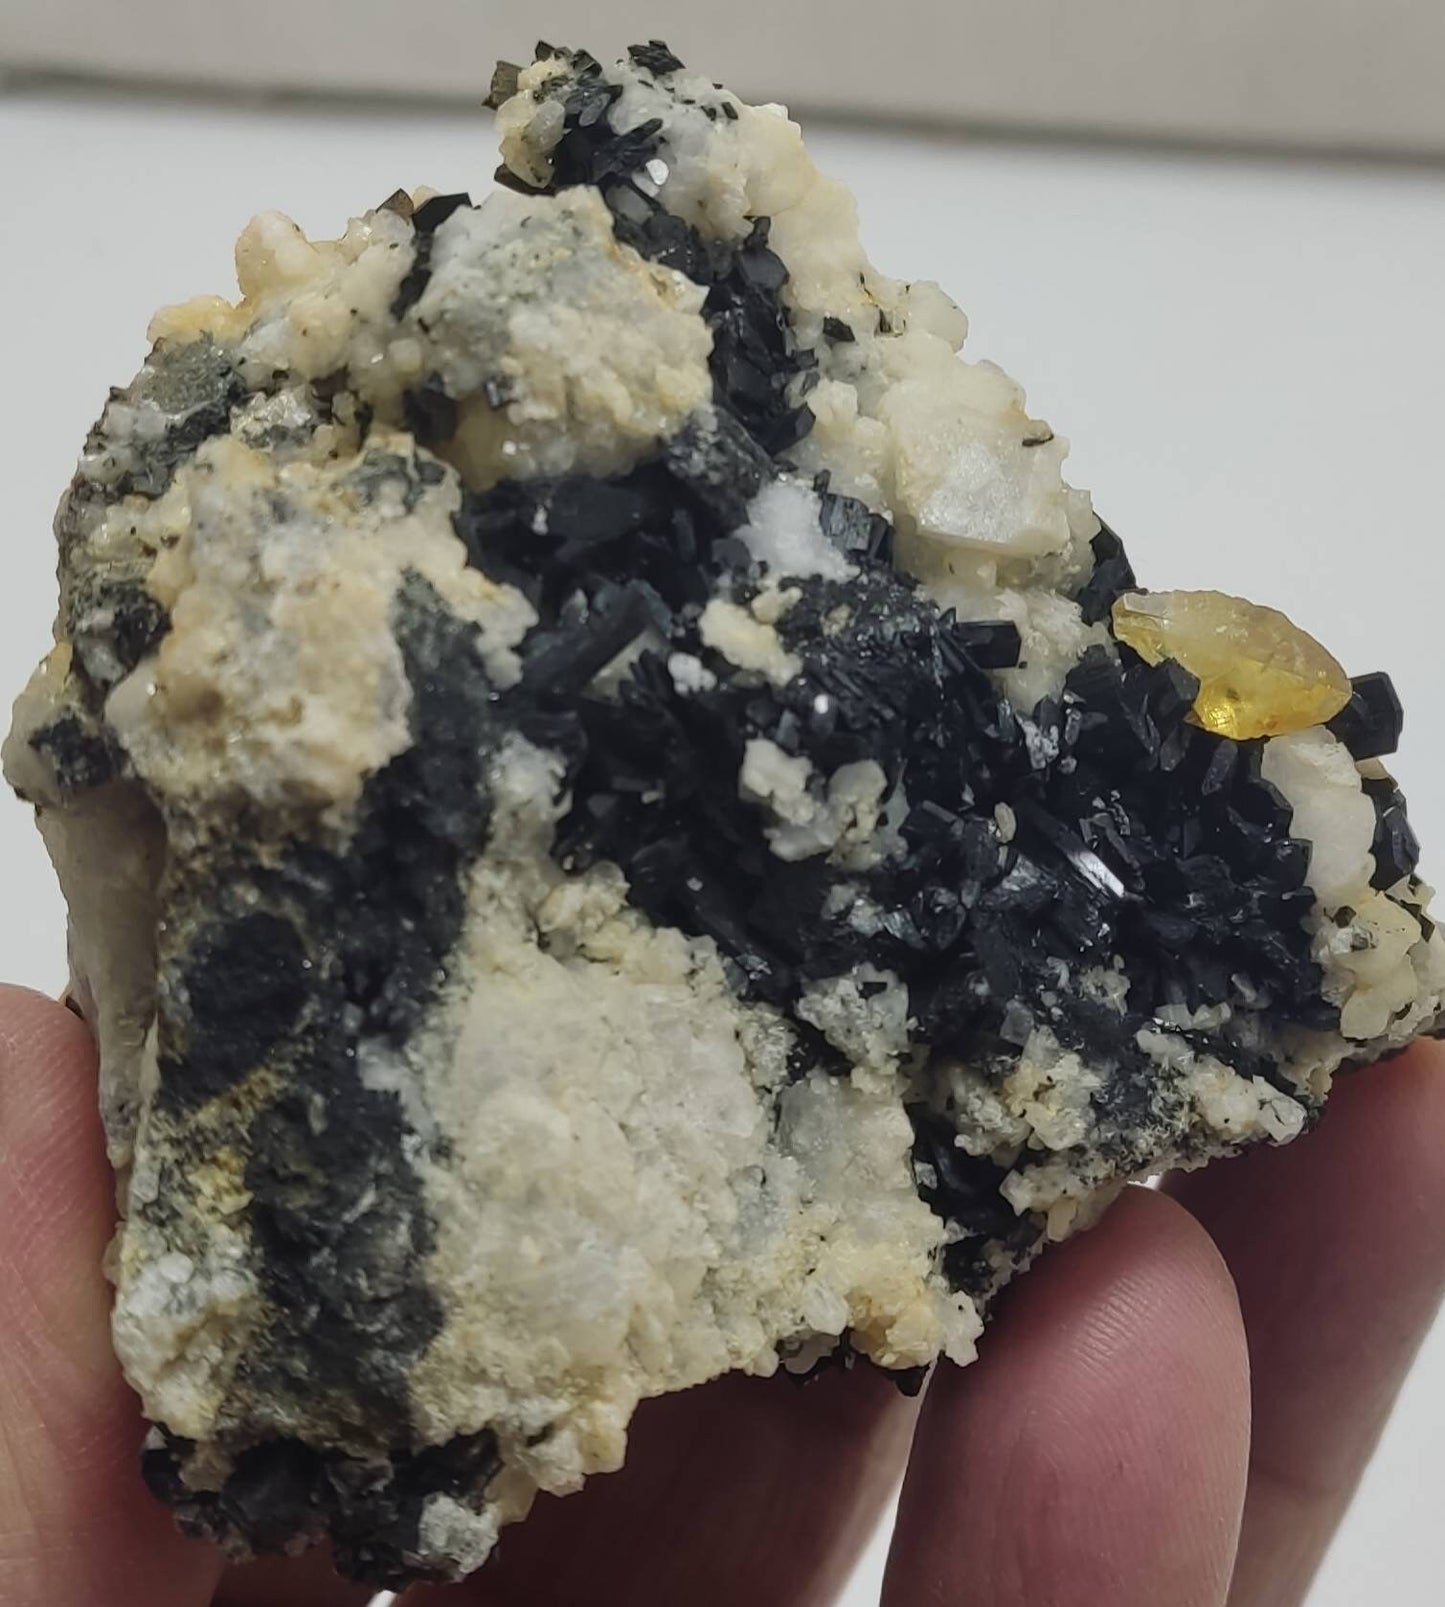 An amazing specimen of titanite sphene with actinolite or aegirine on matrix 245 g